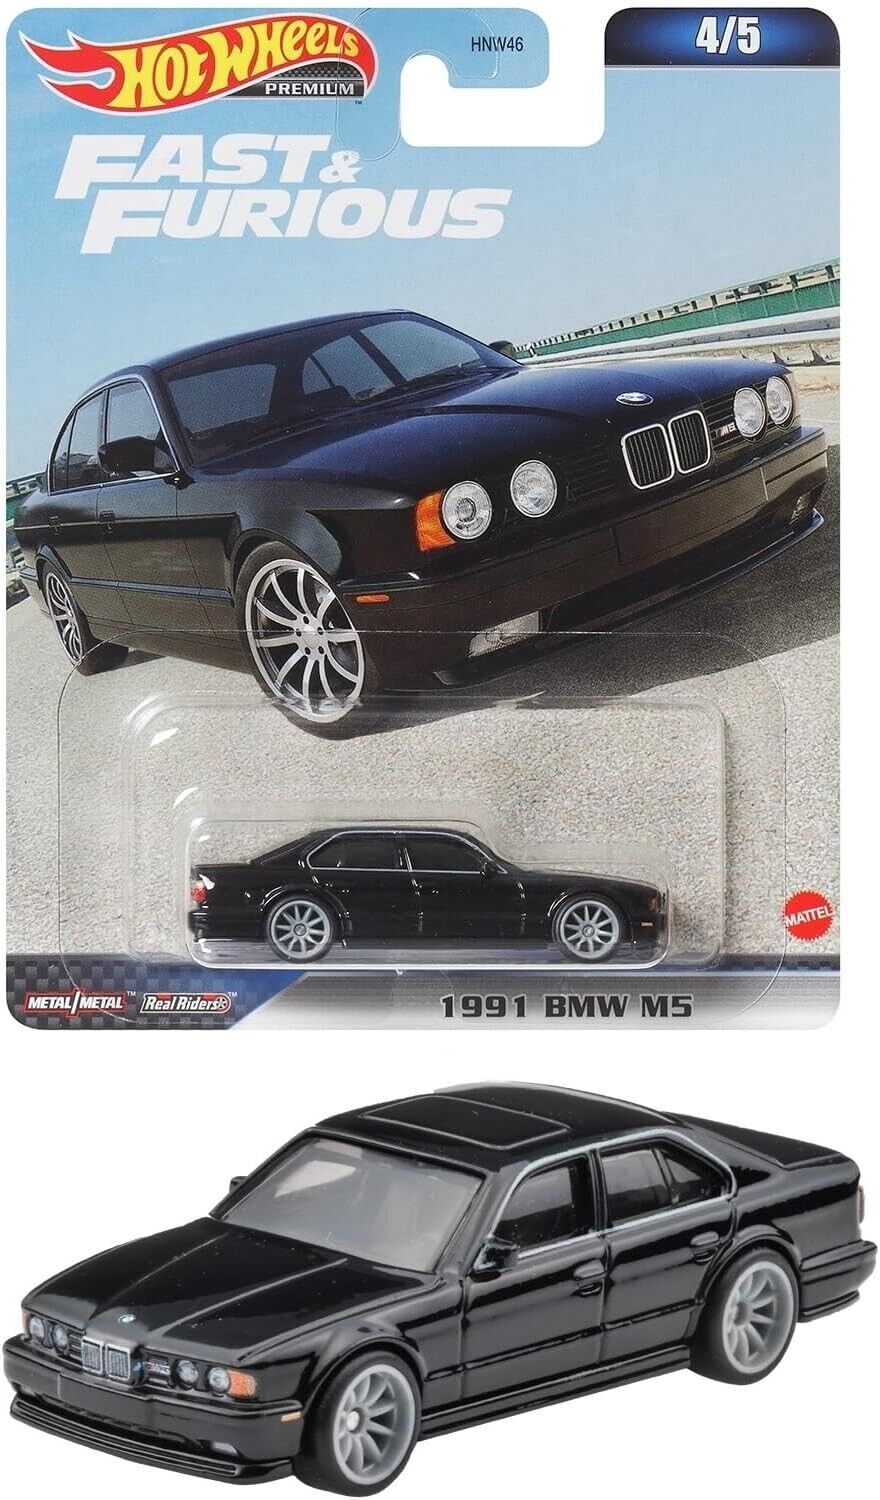 2023 Hot Wheels Premium Fast & Furious 1991 BMW M5 4/5